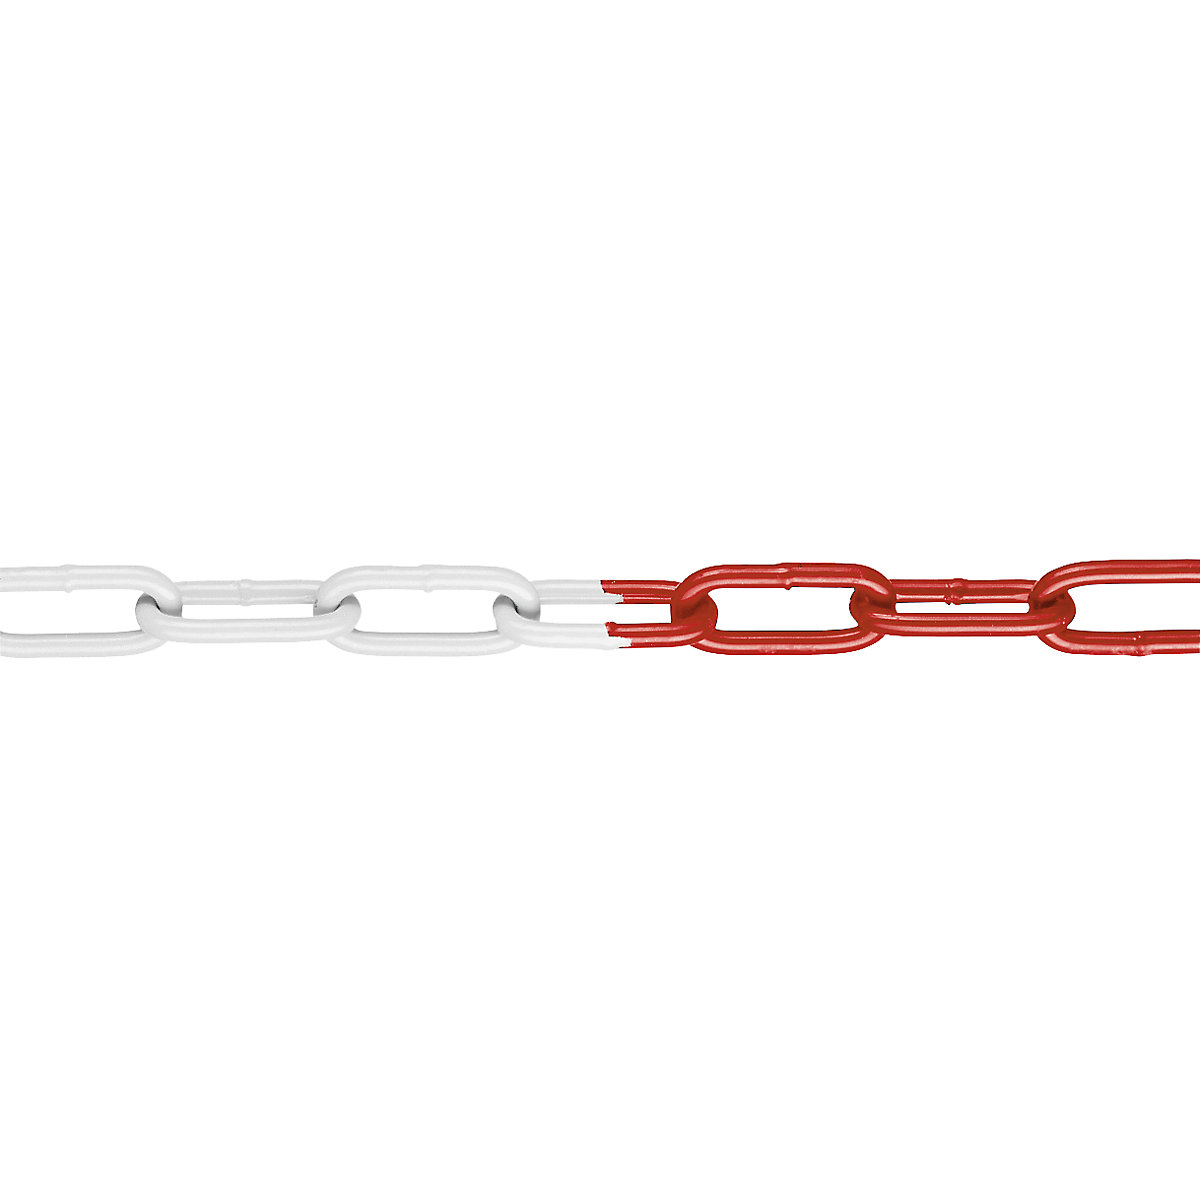 Signal-Sperrkette, aus kunststoffbeschichtetem Stahl, 15 m, rot/weiß